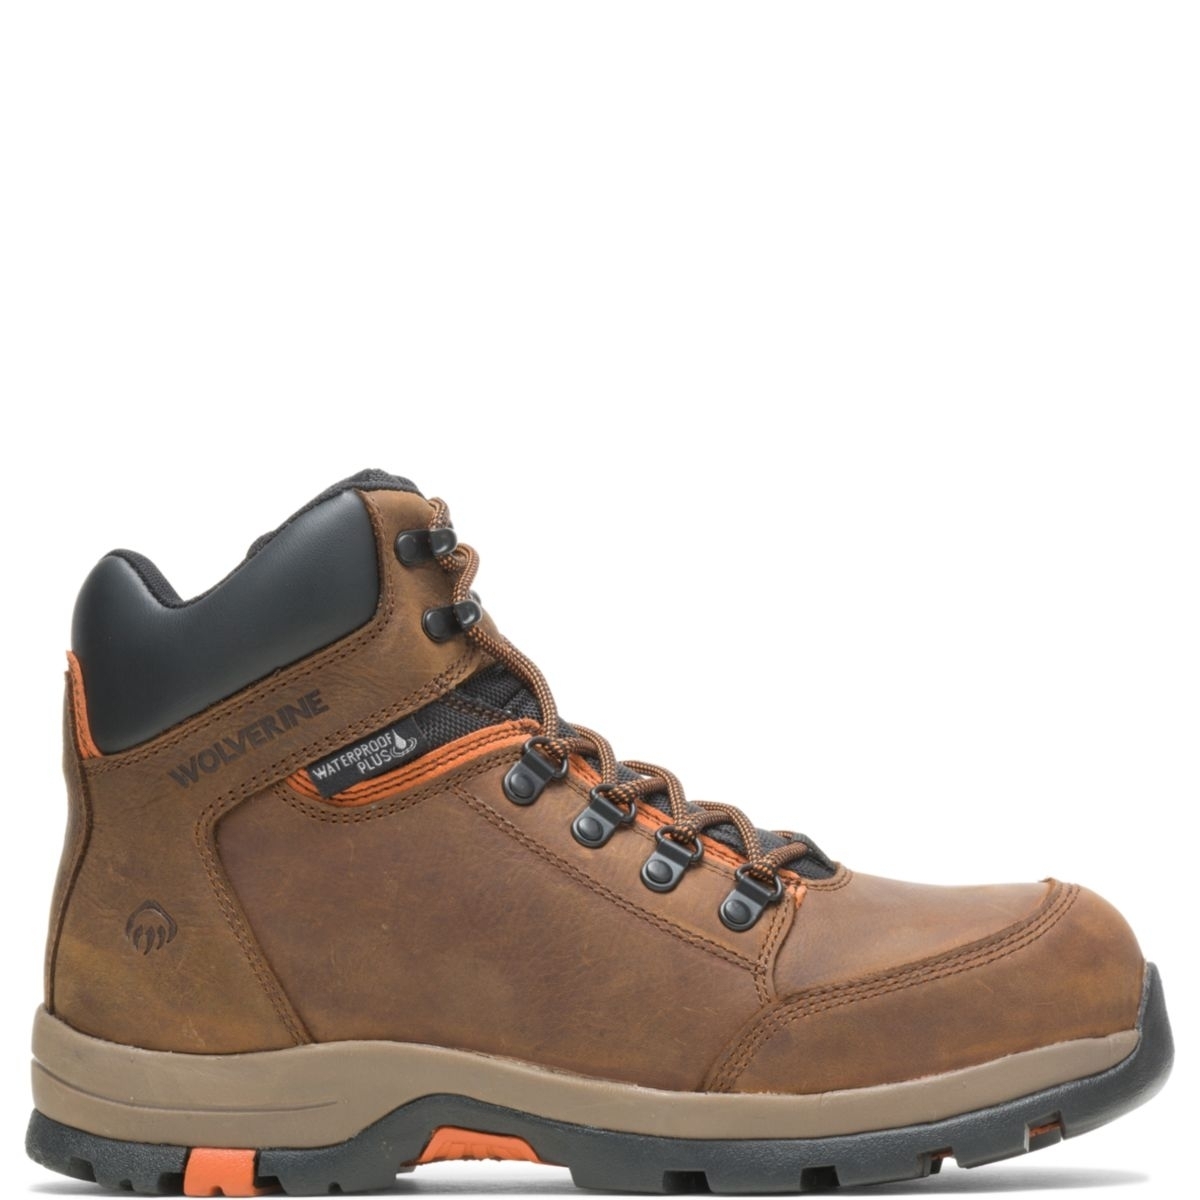 WOLVERINE Men's Grayson Steel Toe Waterproof Work Boot Brown - W211043 BROWN - BROWN, 12 X-Wide